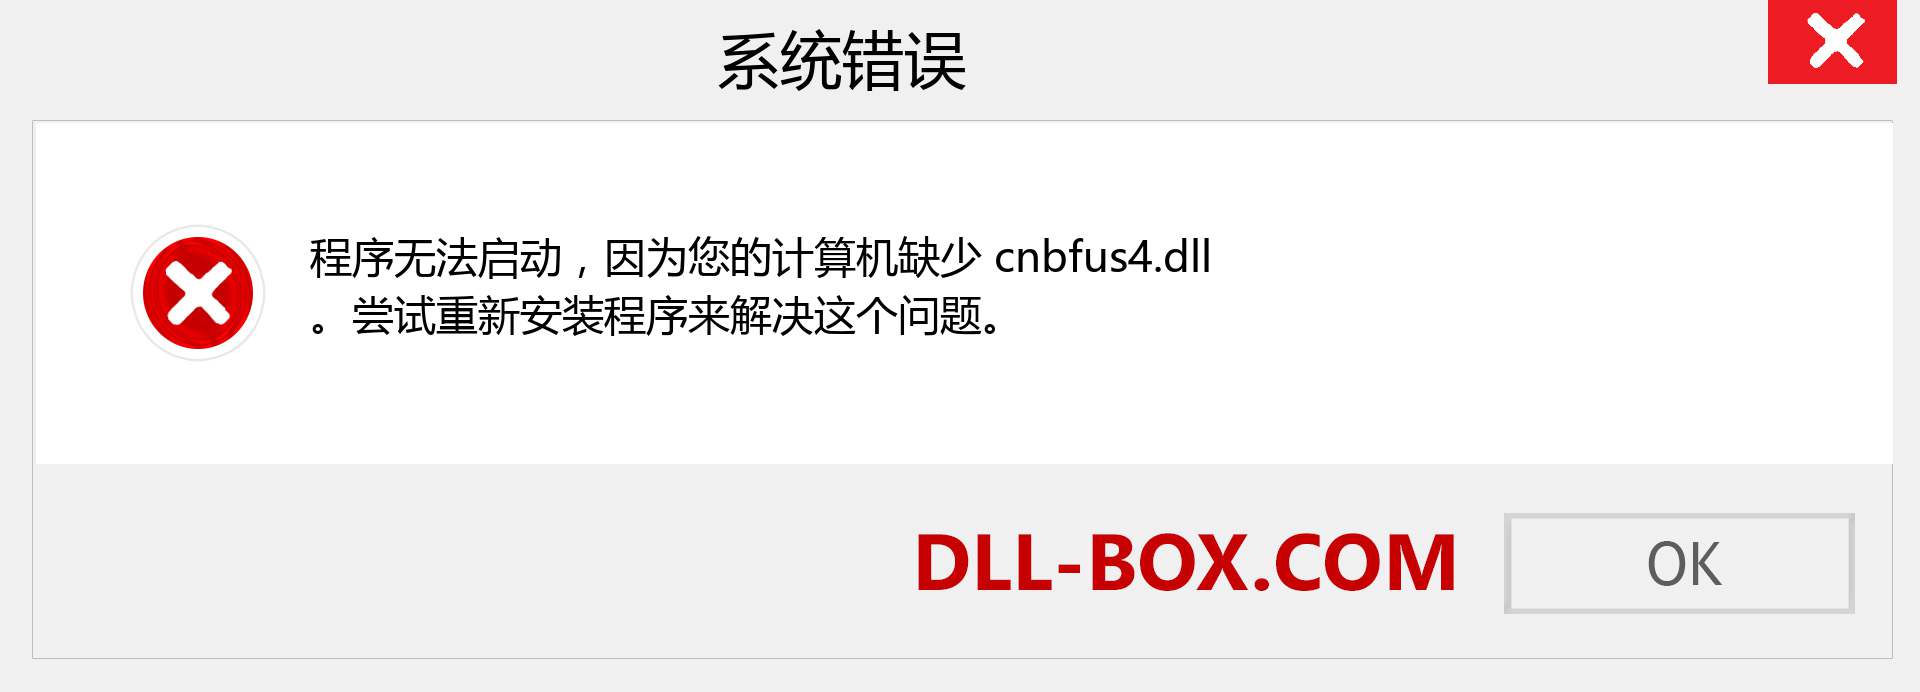 cnbfus4.dll 文件丢失？。 适用于 Windows 7、8、10 的下载 - 修复 Windows、照片、图像上的 cnbfus4 dll 丢失错误